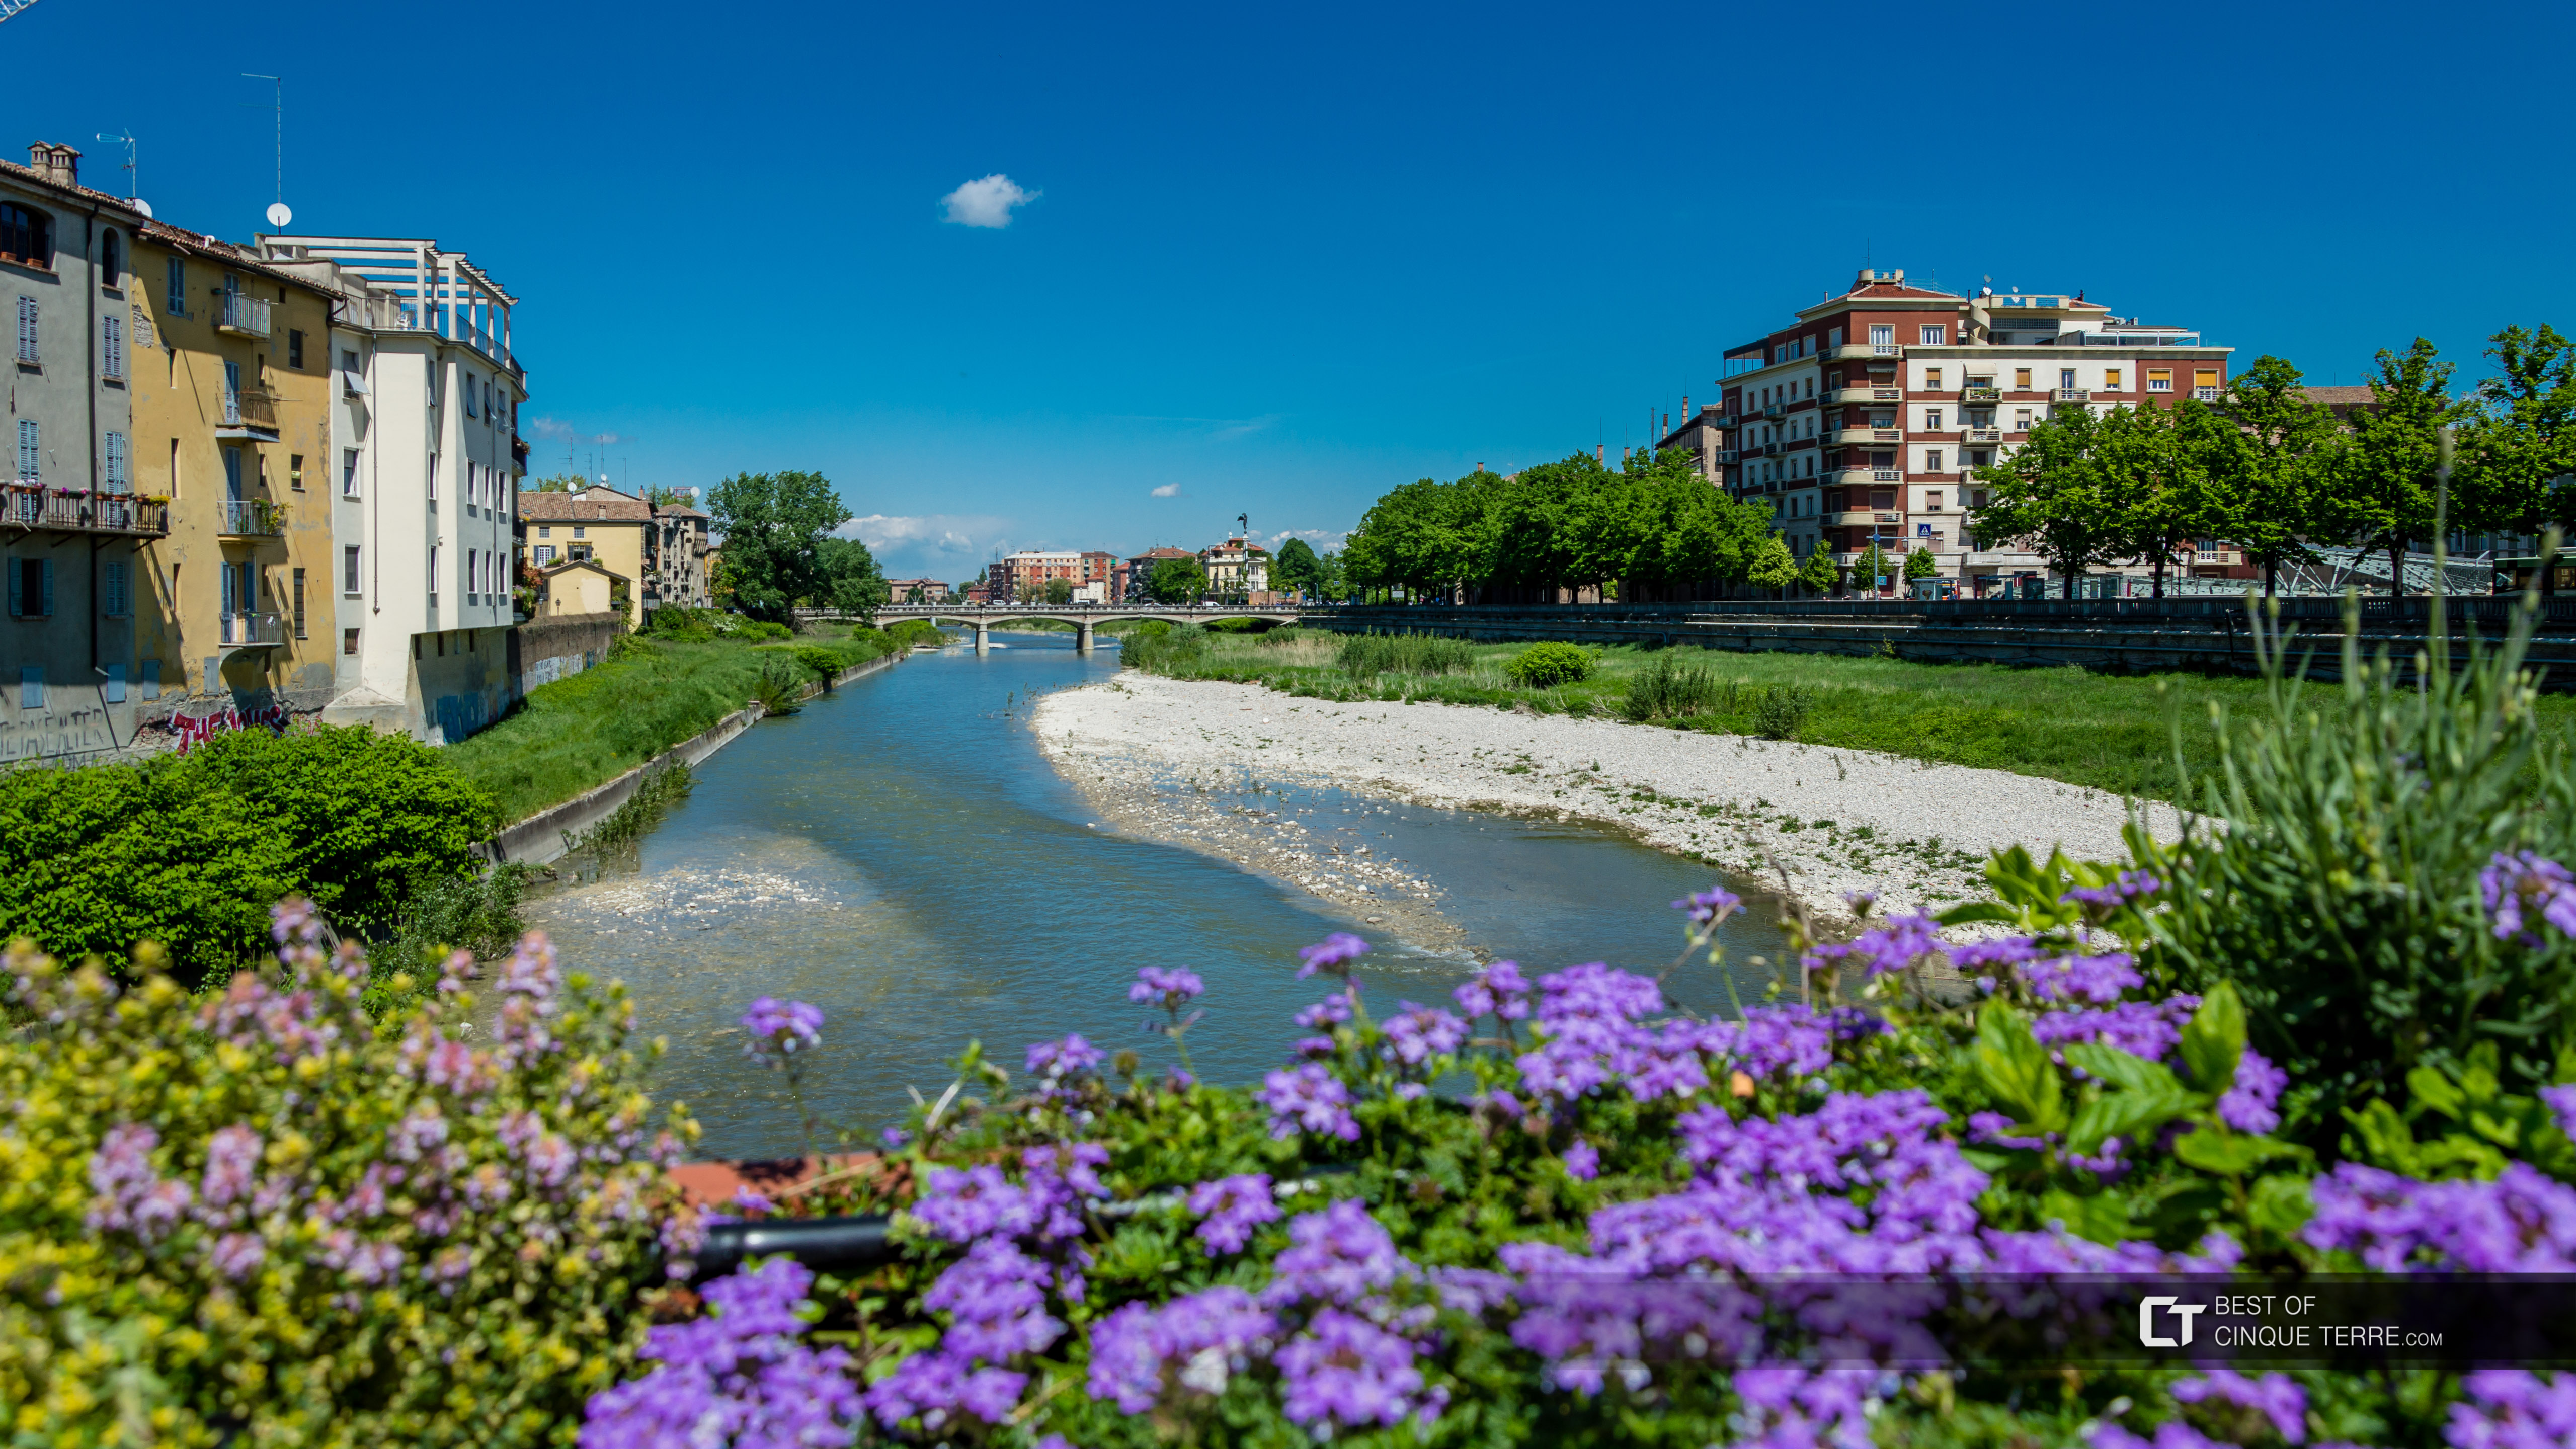 Vista del Río Parma desde el Puente de Mezzo, Italia